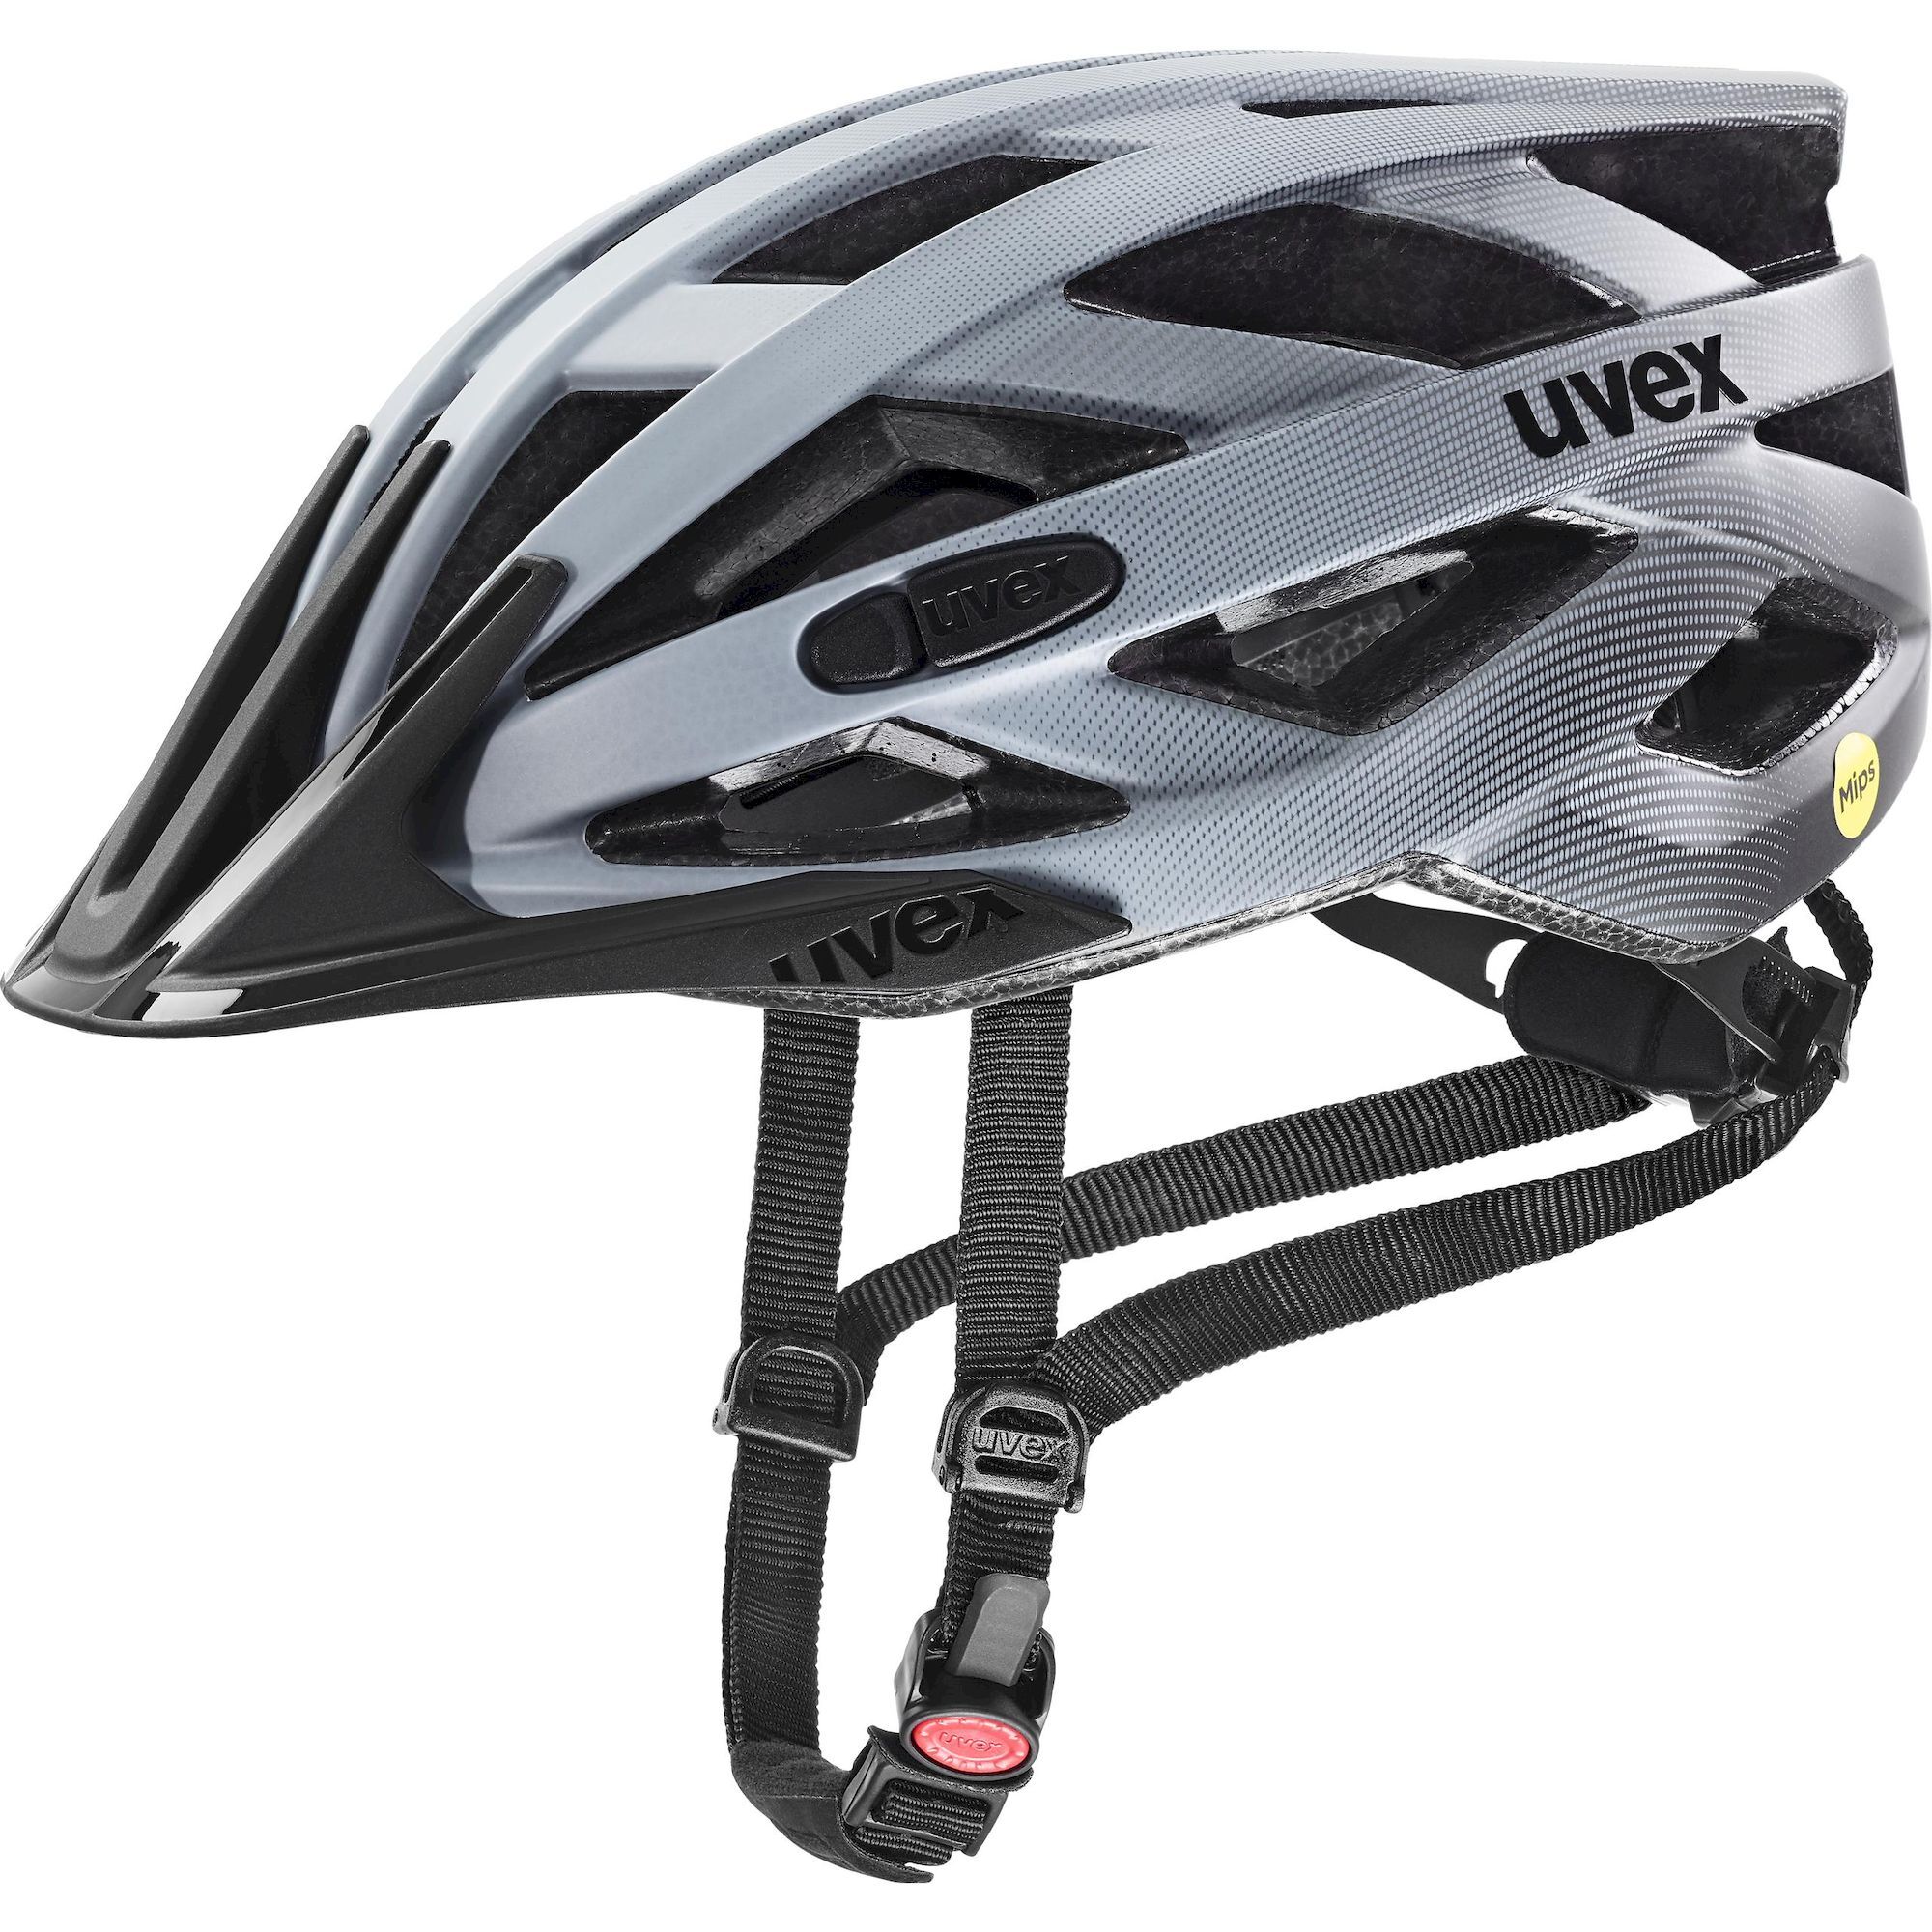 Uvex I-vo Cc MIPS - Casco ciclismo carretera